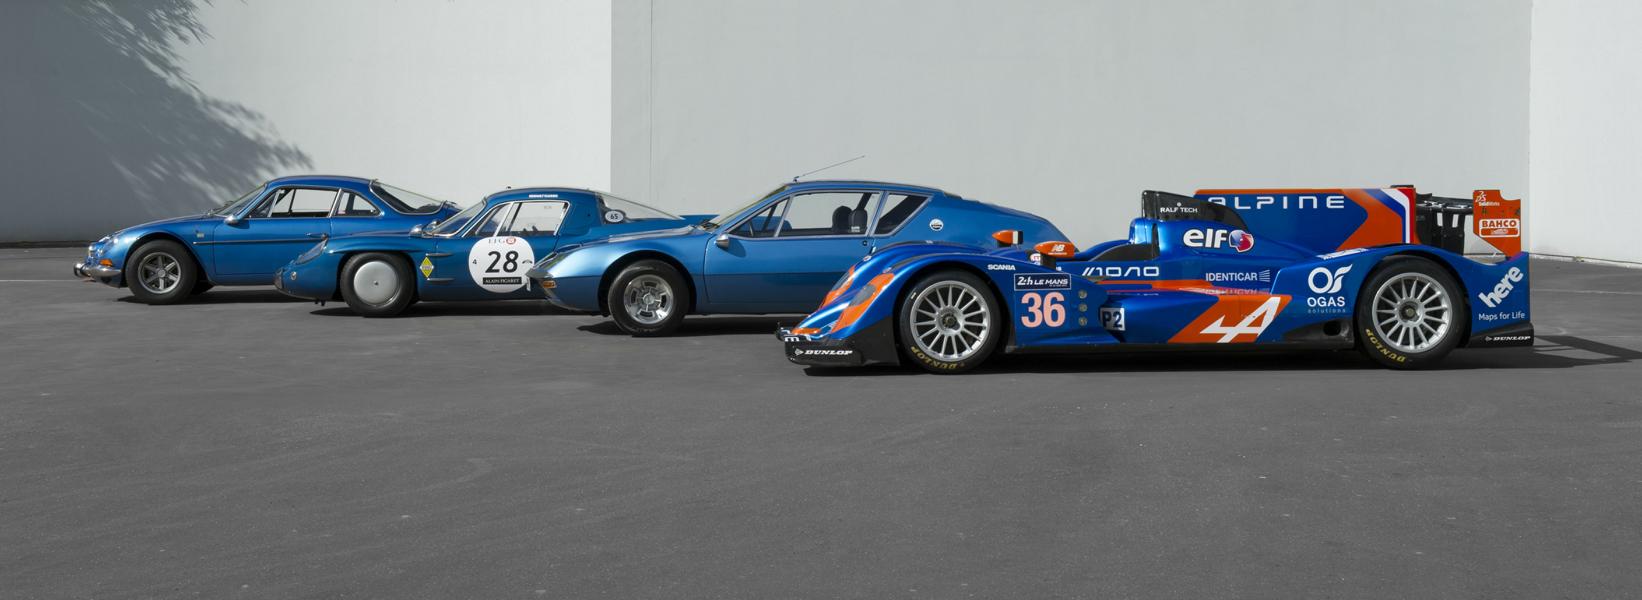 50 shades of blue: eine ikonische Farbe für ein legendäres Auto